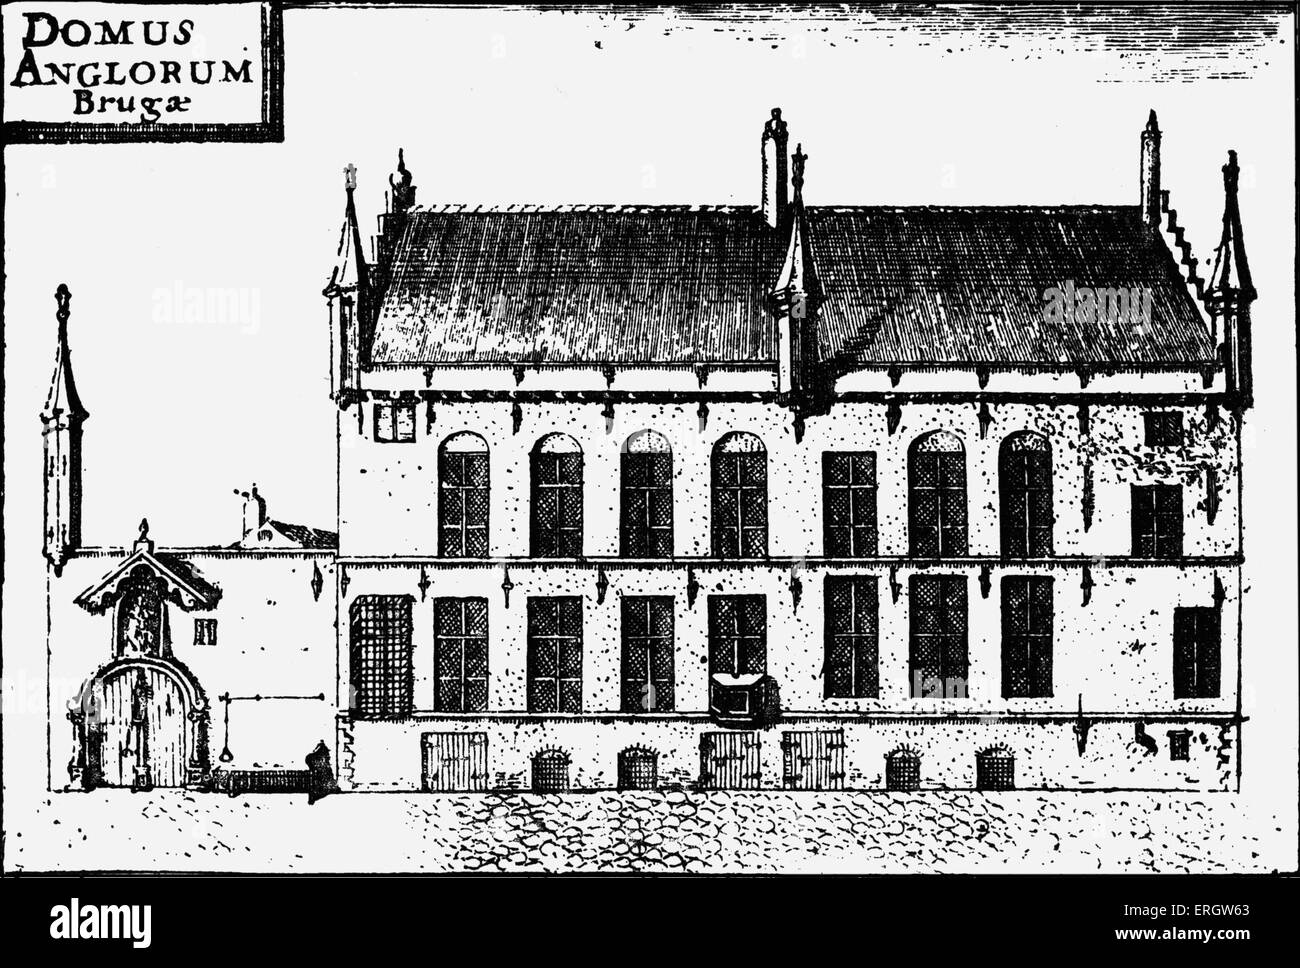 "Domus Anglorum" William Caxton Haus in Brügge, Belgien. WC: Englischer Kaufmann, Schriftsteller und Drucker, C 1415-1422 – C März Stockfoto